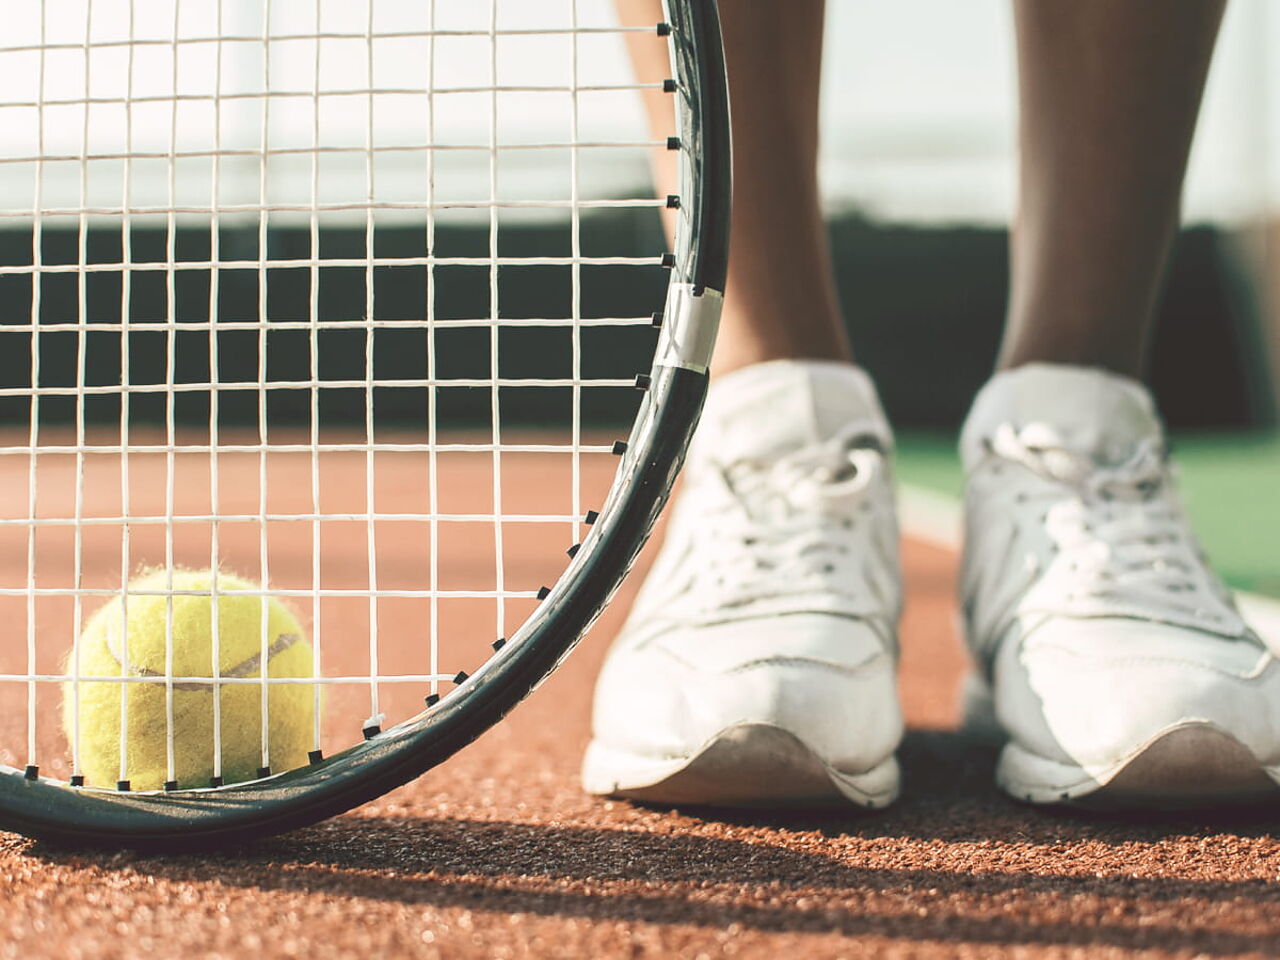 テニスラケットとボールの画像